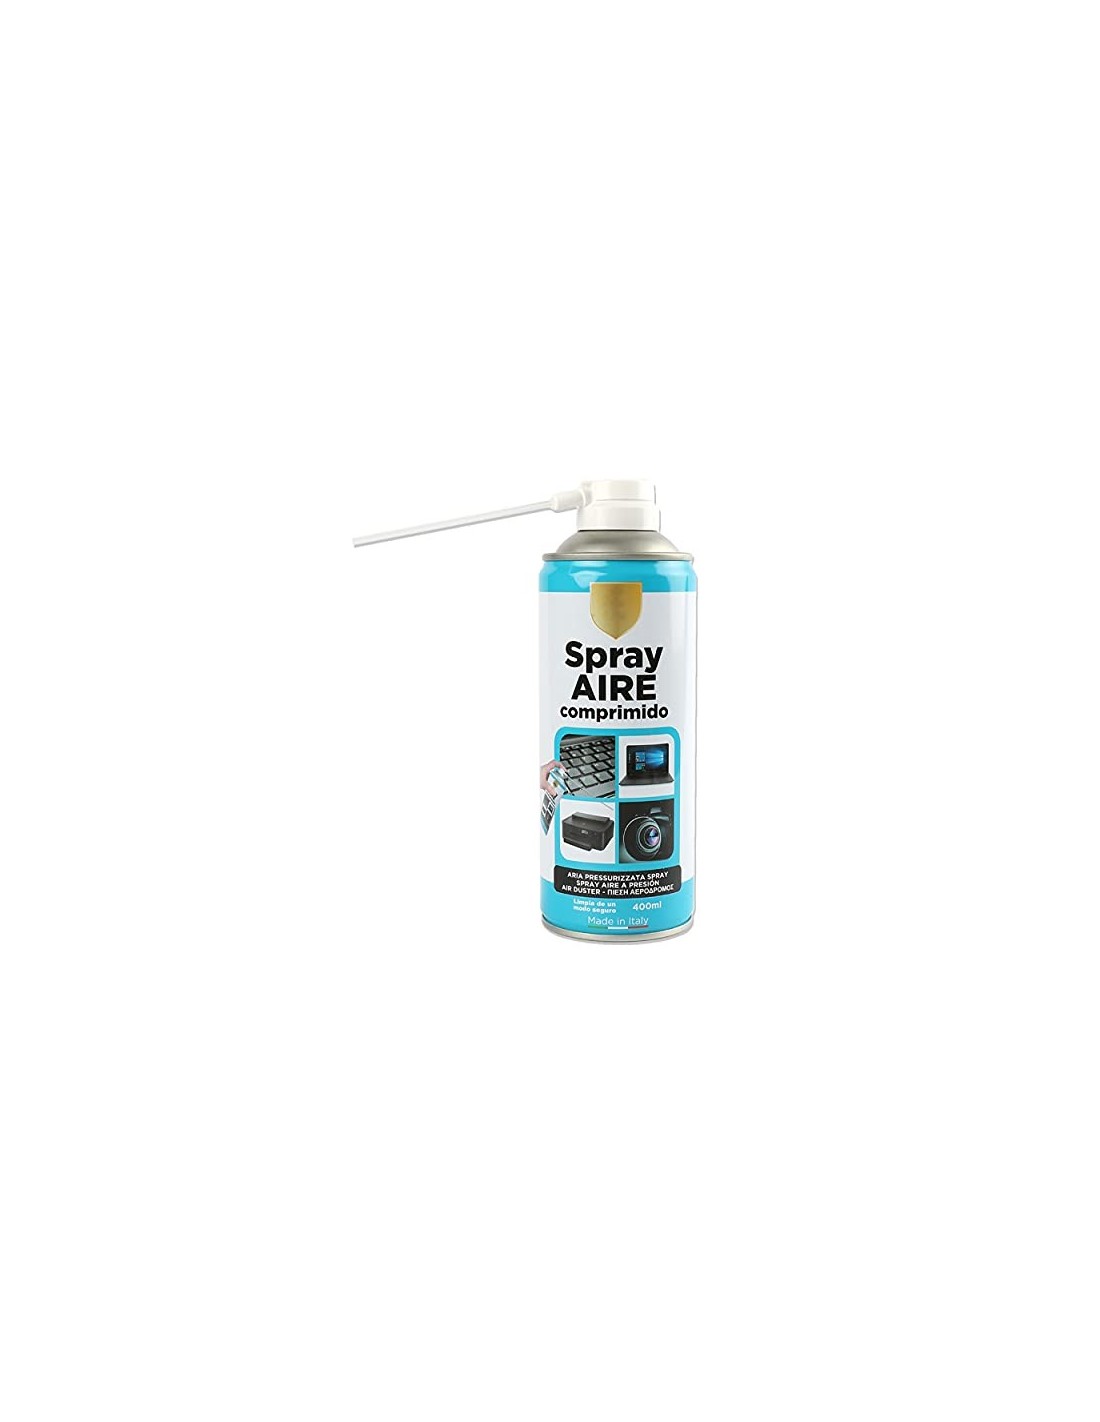 Spray Aire Comprimido 400ml para la Limpieza Ideal para Teclados